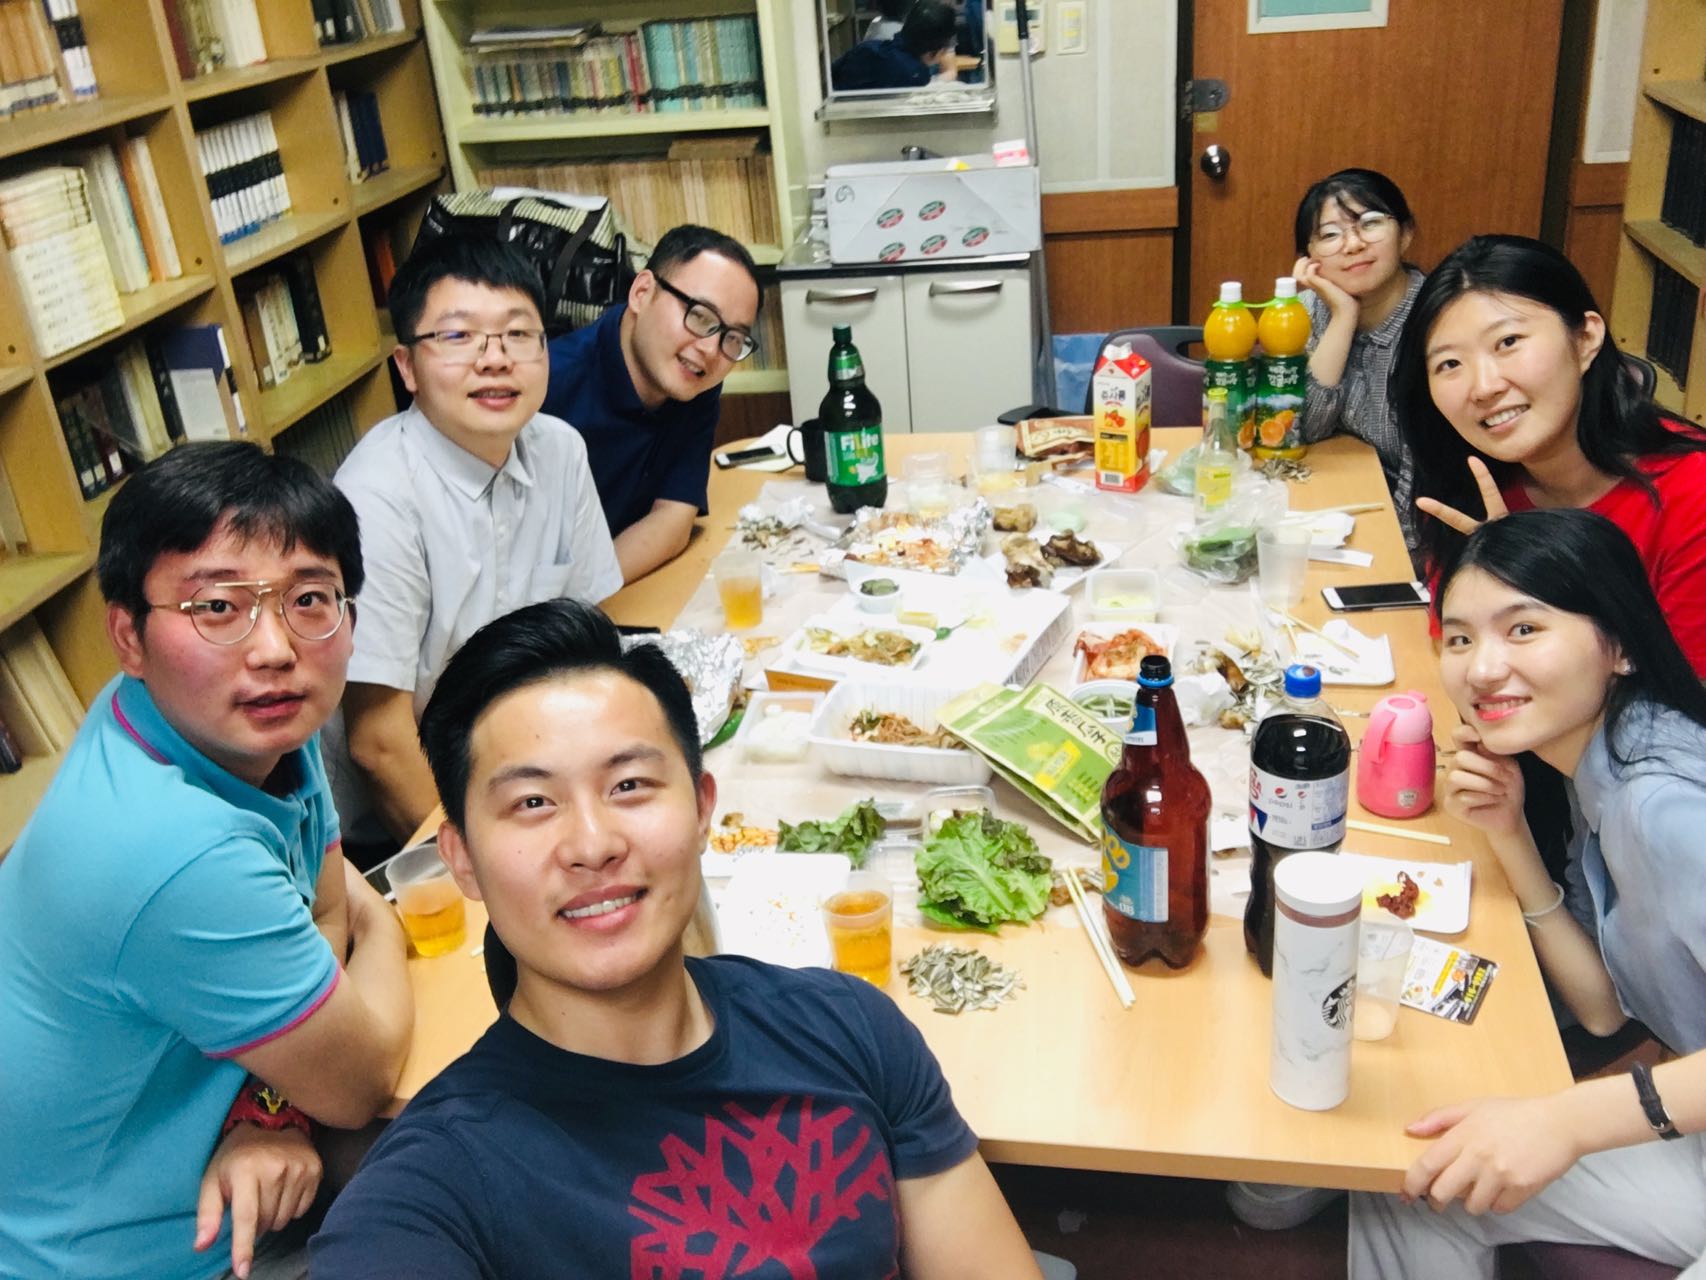 20190822毕业典礼后与研究室聚餐